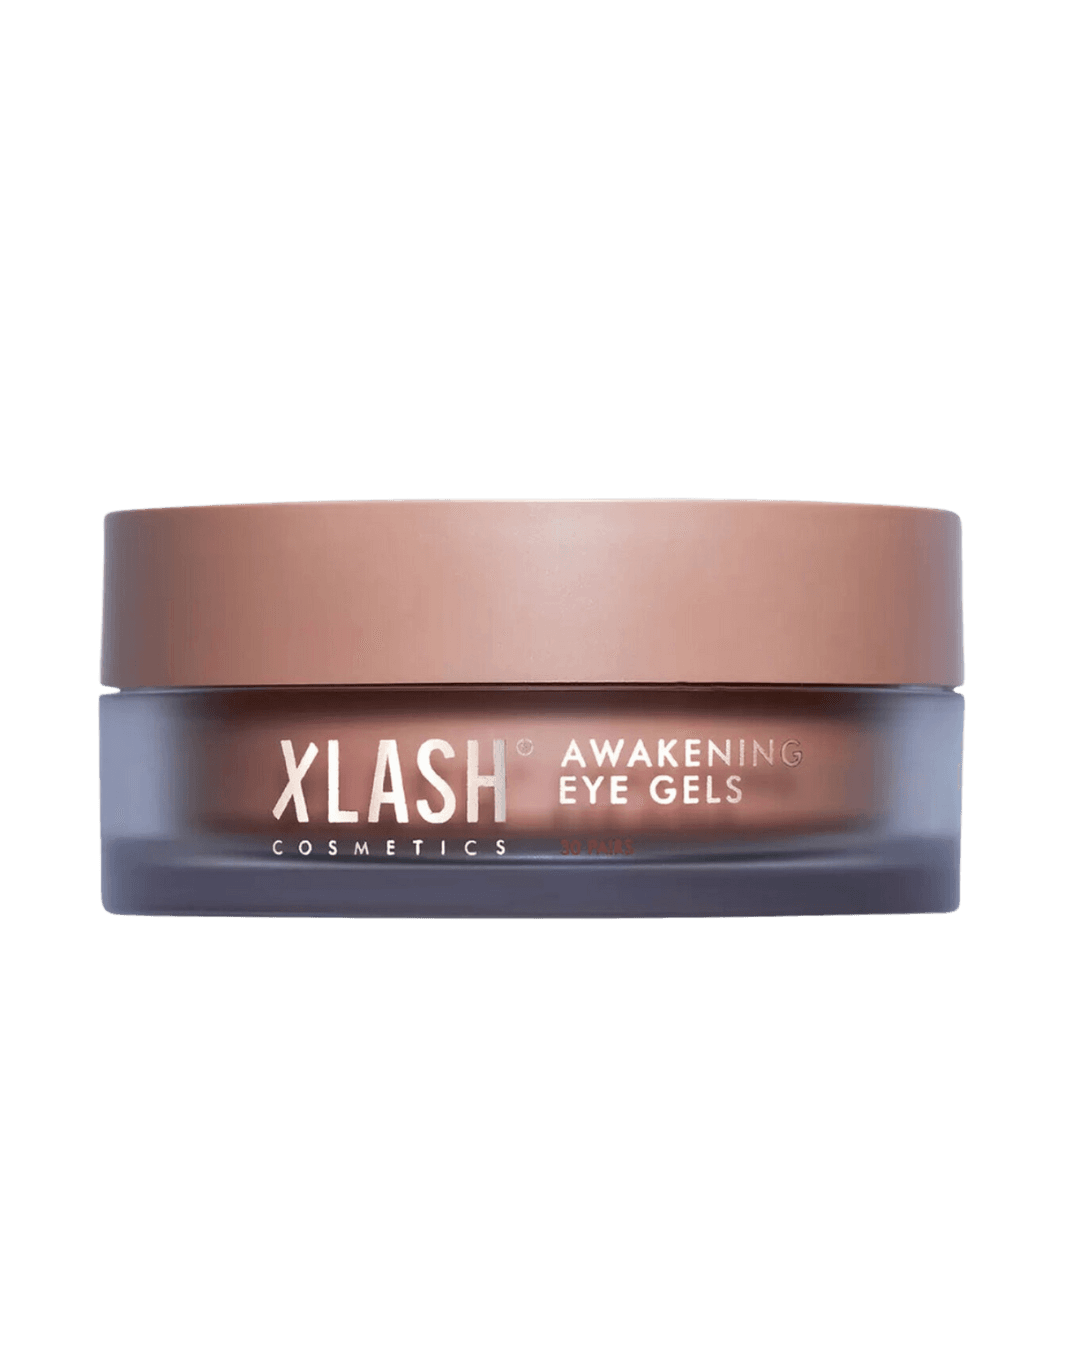 XLASH Cosmetics Singapore Awakening Eye Gels